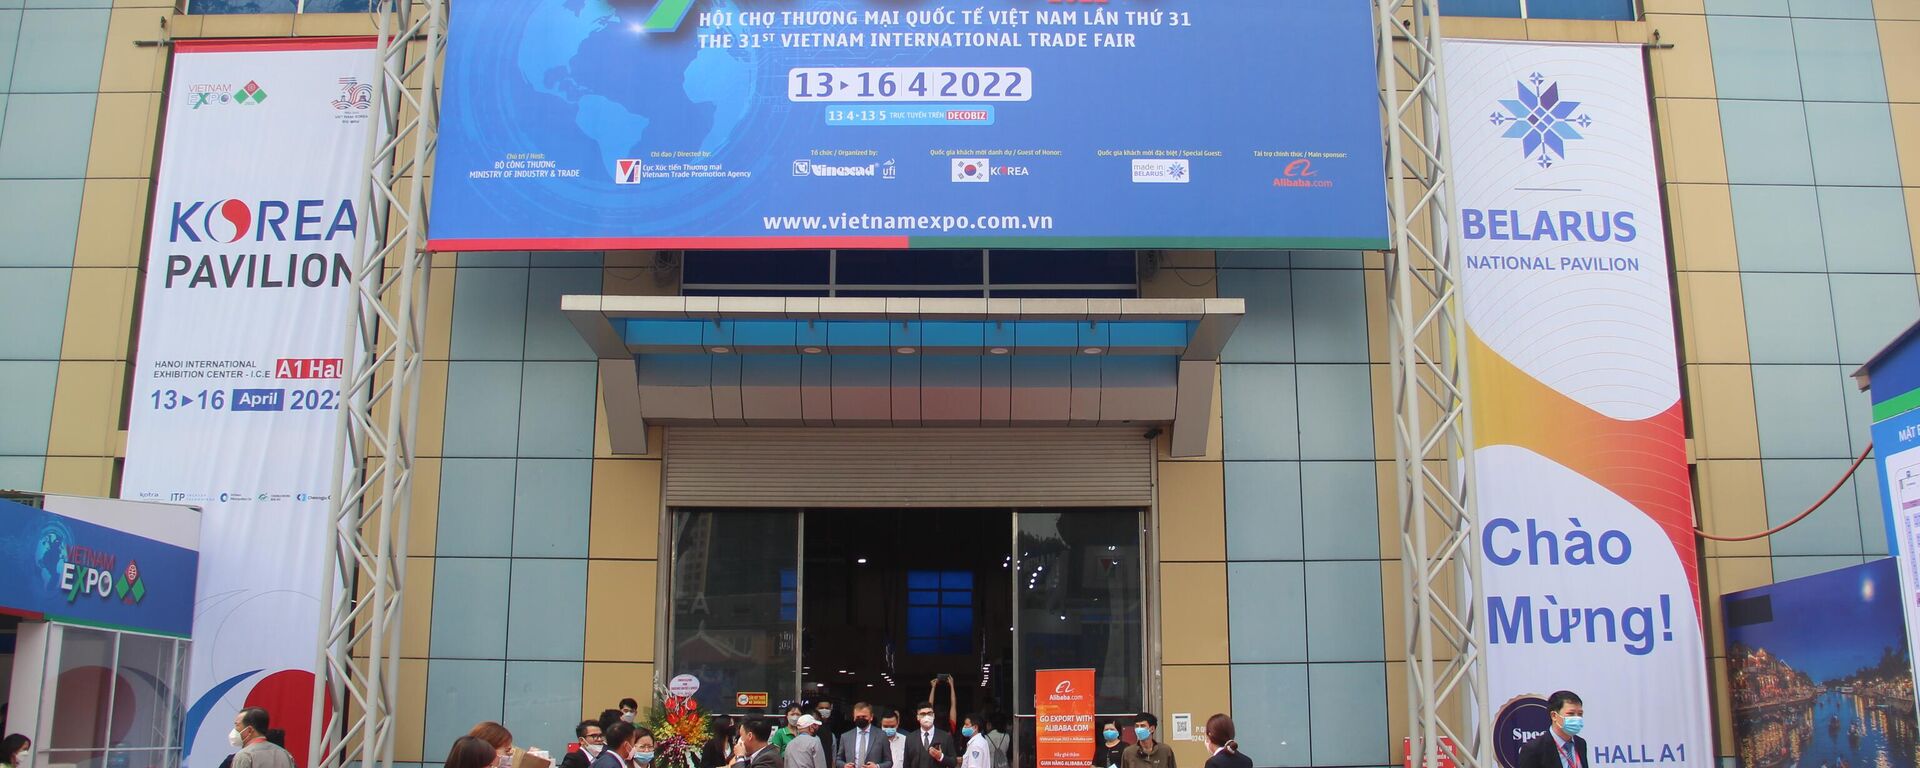 Vietnam Expo 2022 Hội chợ Thương mại Quốc tế lần thứ 31 - Sputnik Việt Nam, 1920, 14.04.2022